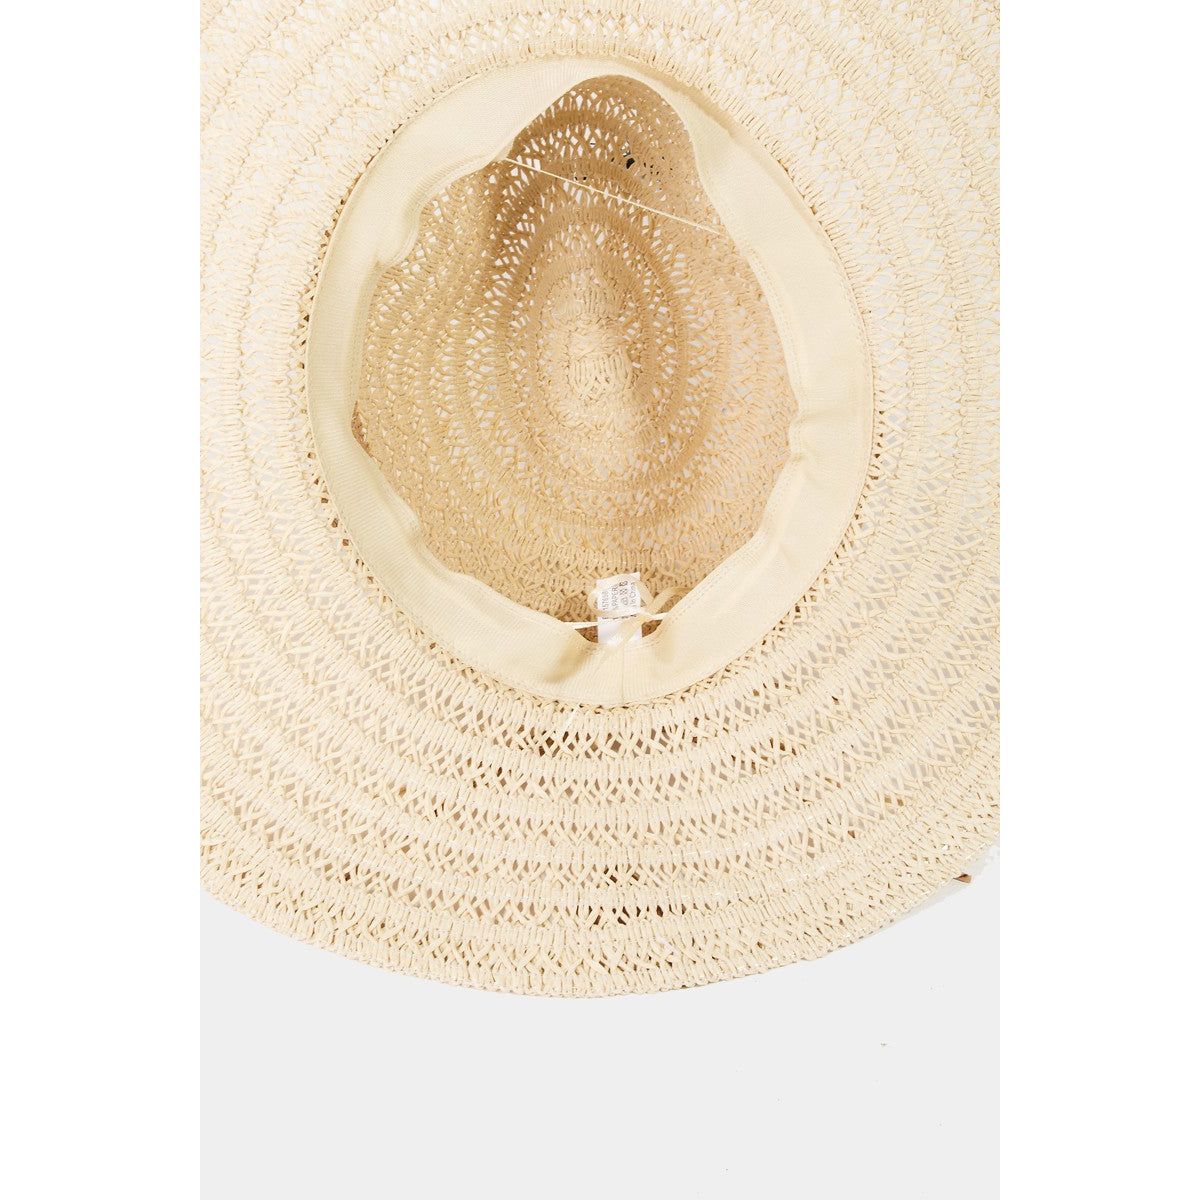 Fame Contrast Straw Braided Sun Hat - TiffanyzKlozet